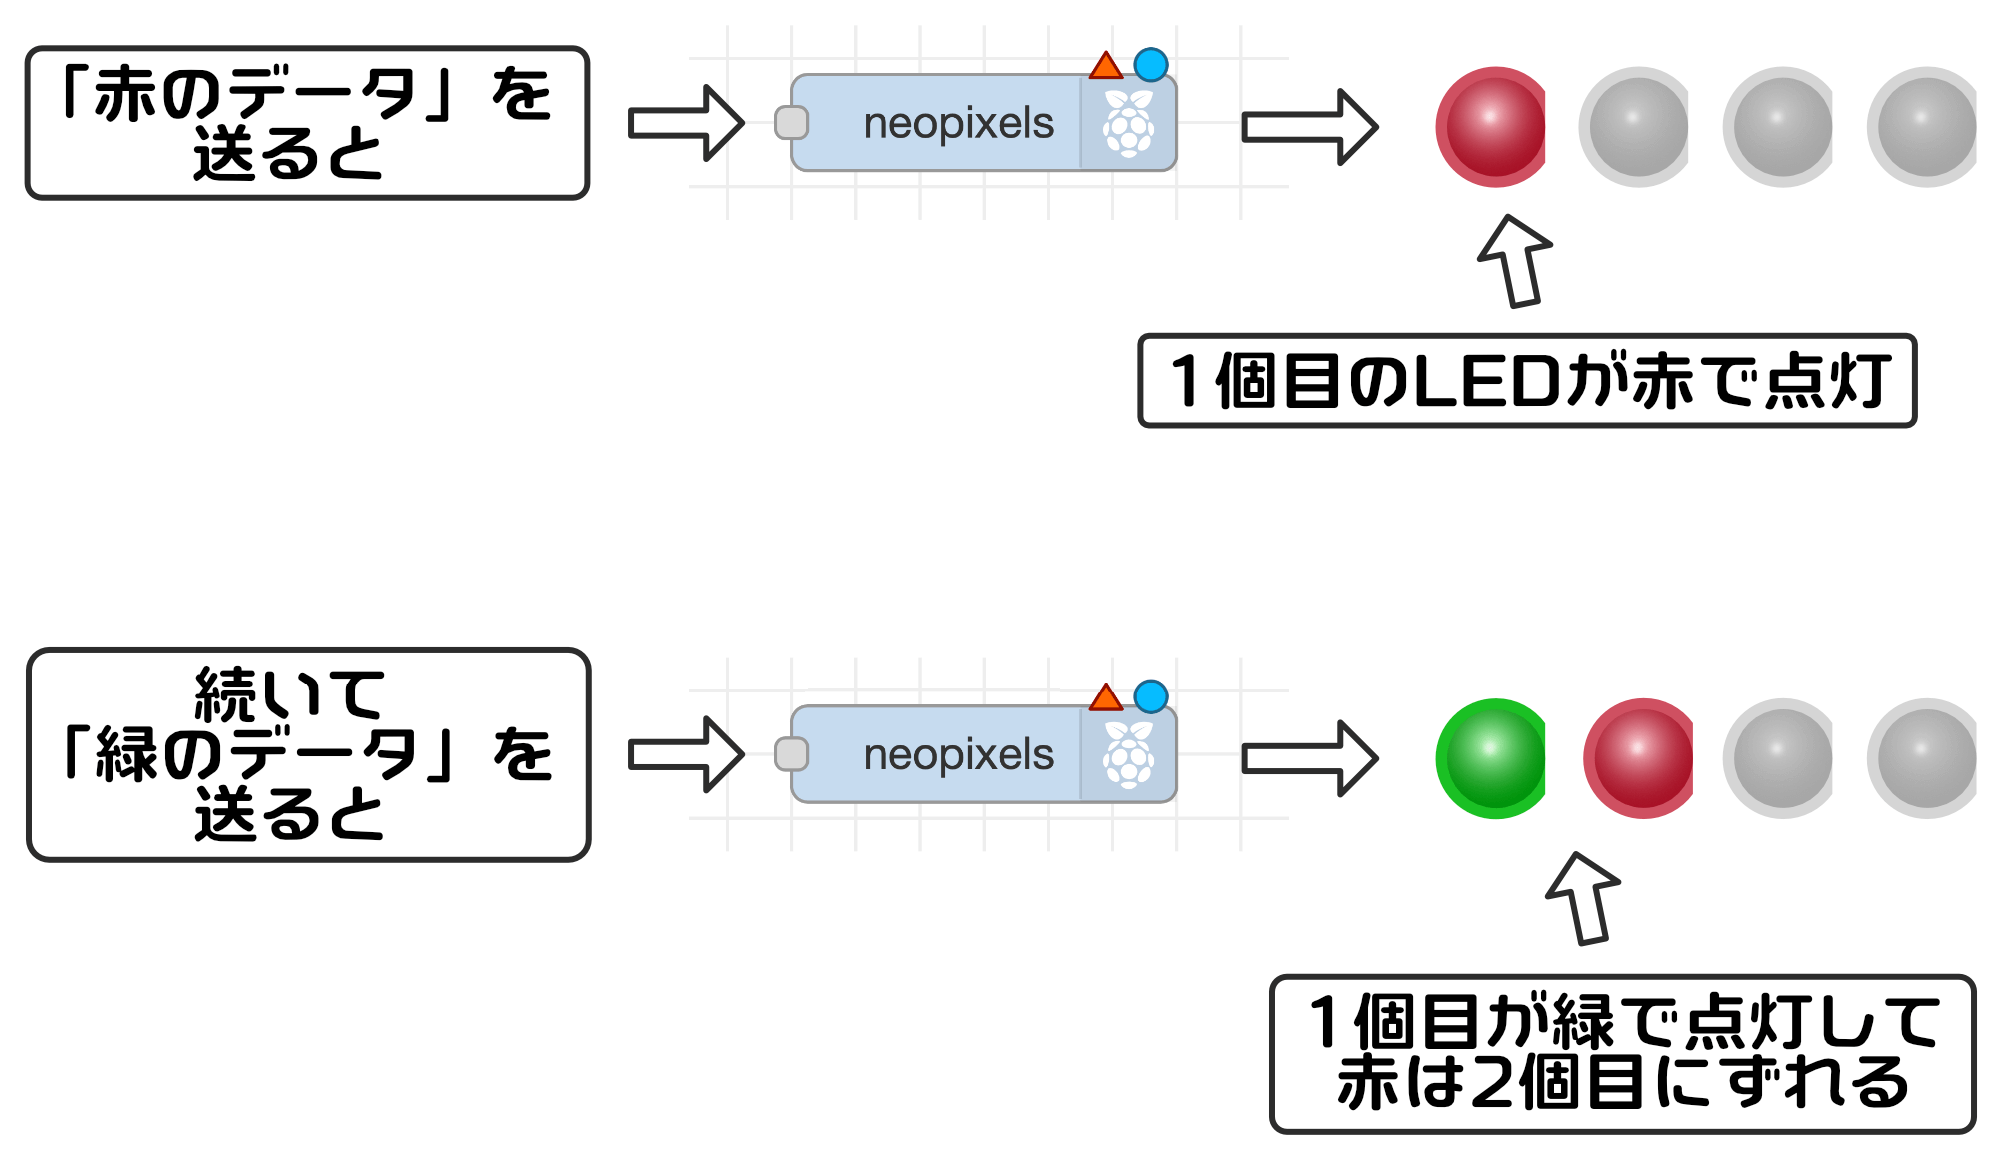 NeoPixelノード機能3